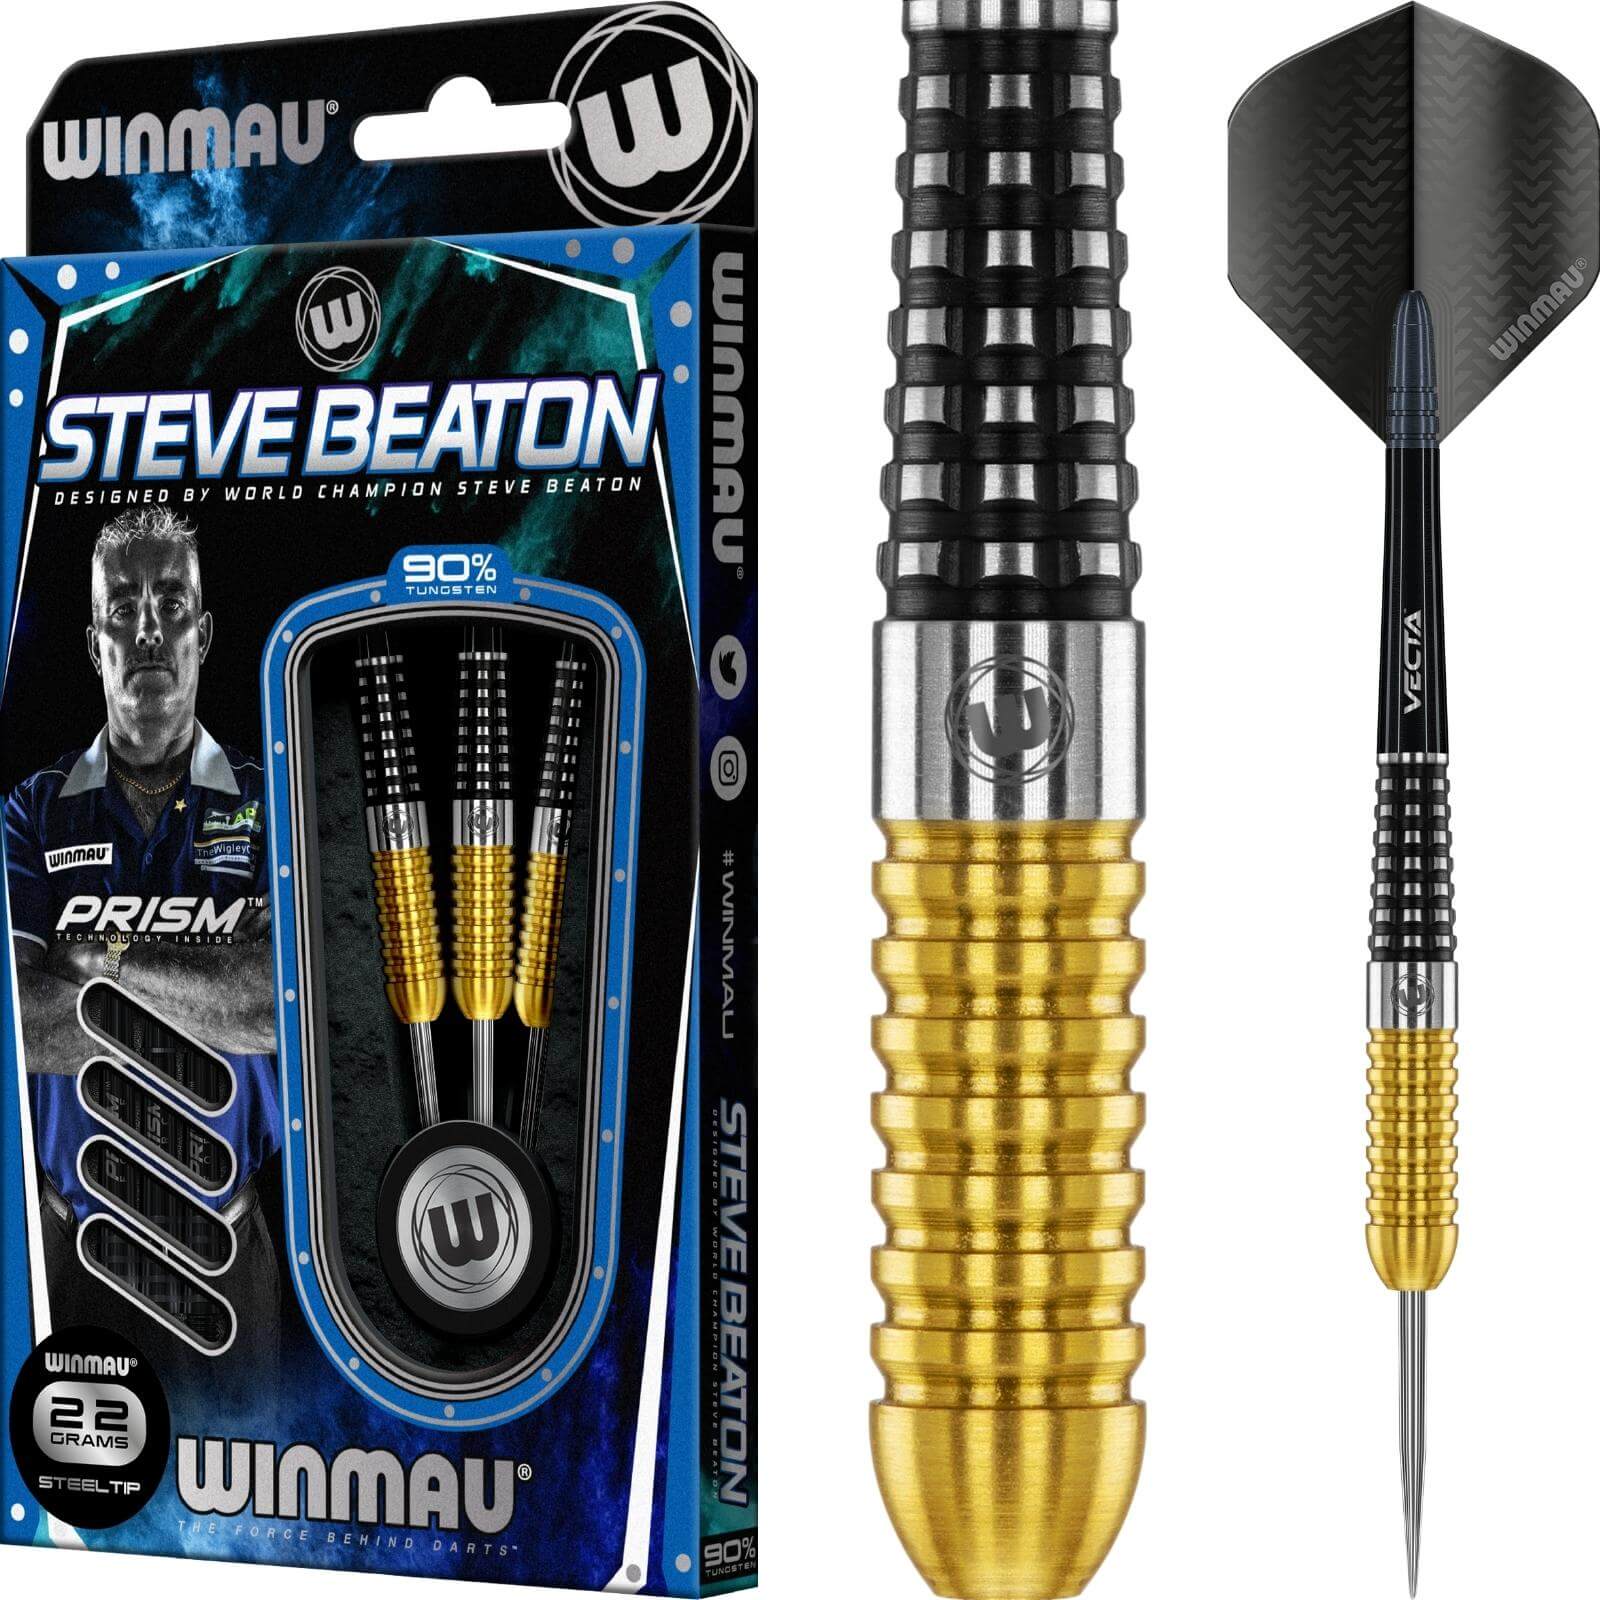 Darts - Winmau - Steve Beaton SE Darts - Steel Tip - 90% Tungsten - 22g 24g 